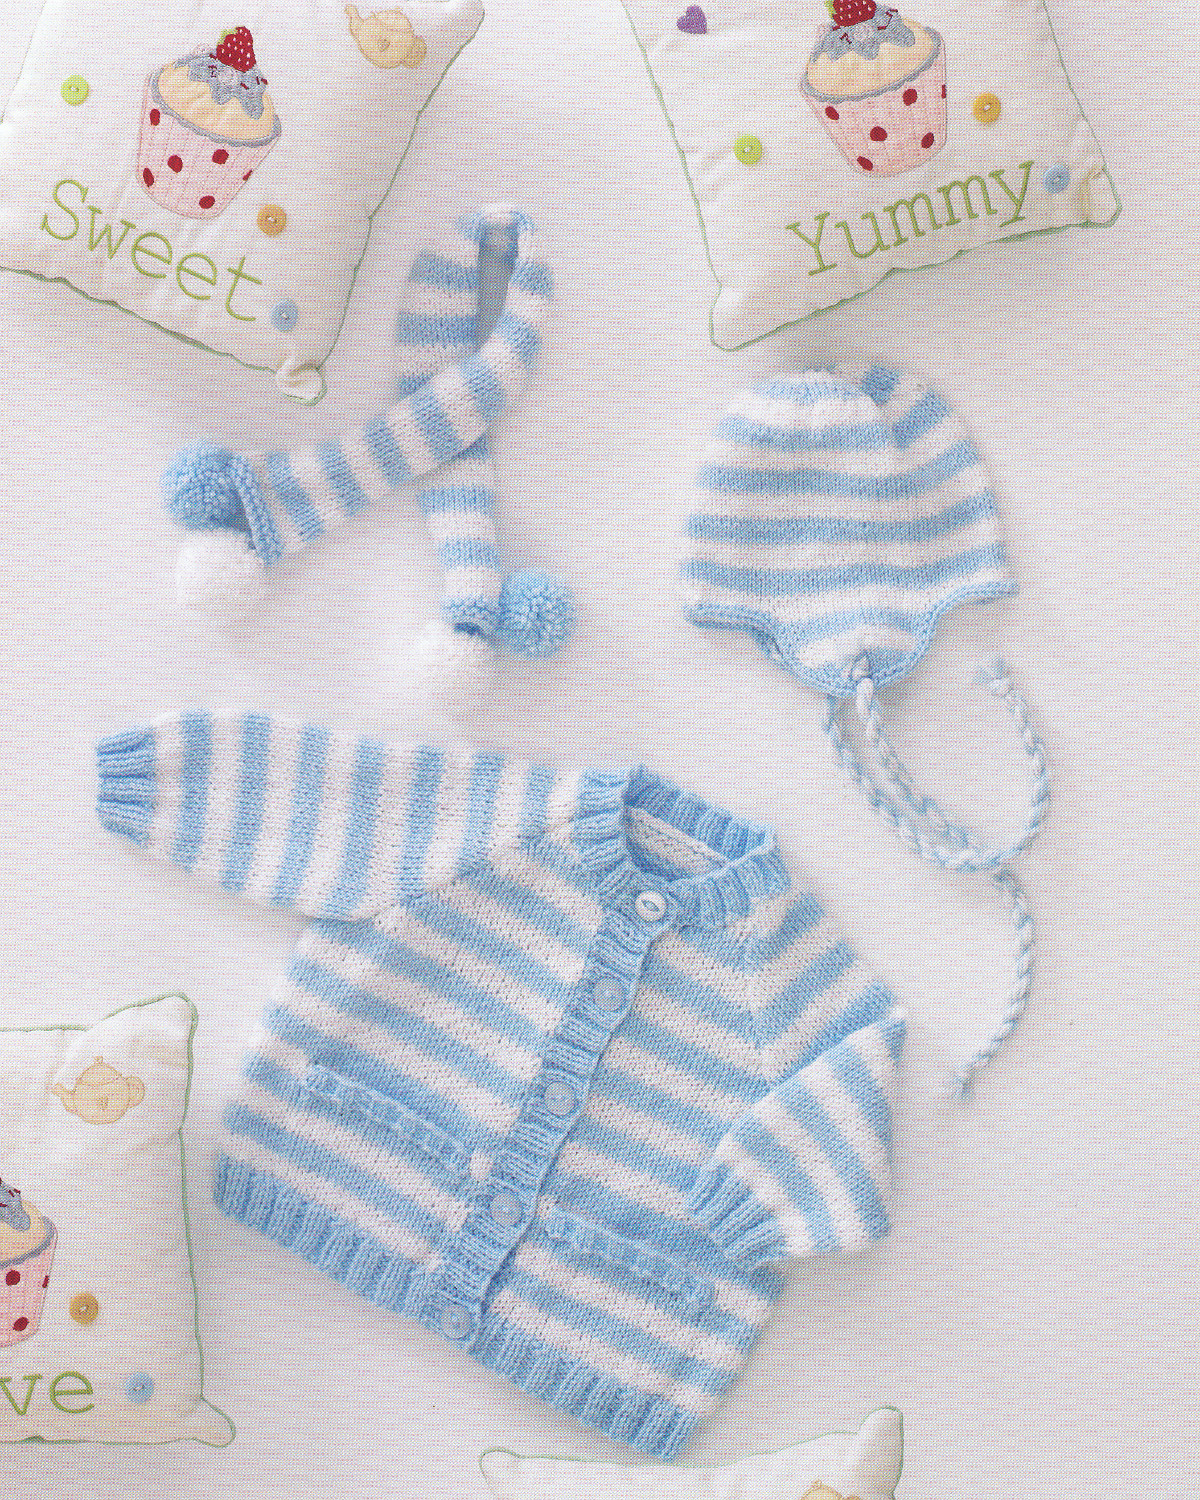 Free Baby Knitting Patterns Double Knit Double Knitting Dk Pattern Ba Striped Cardigan Tassel Helmet Hat